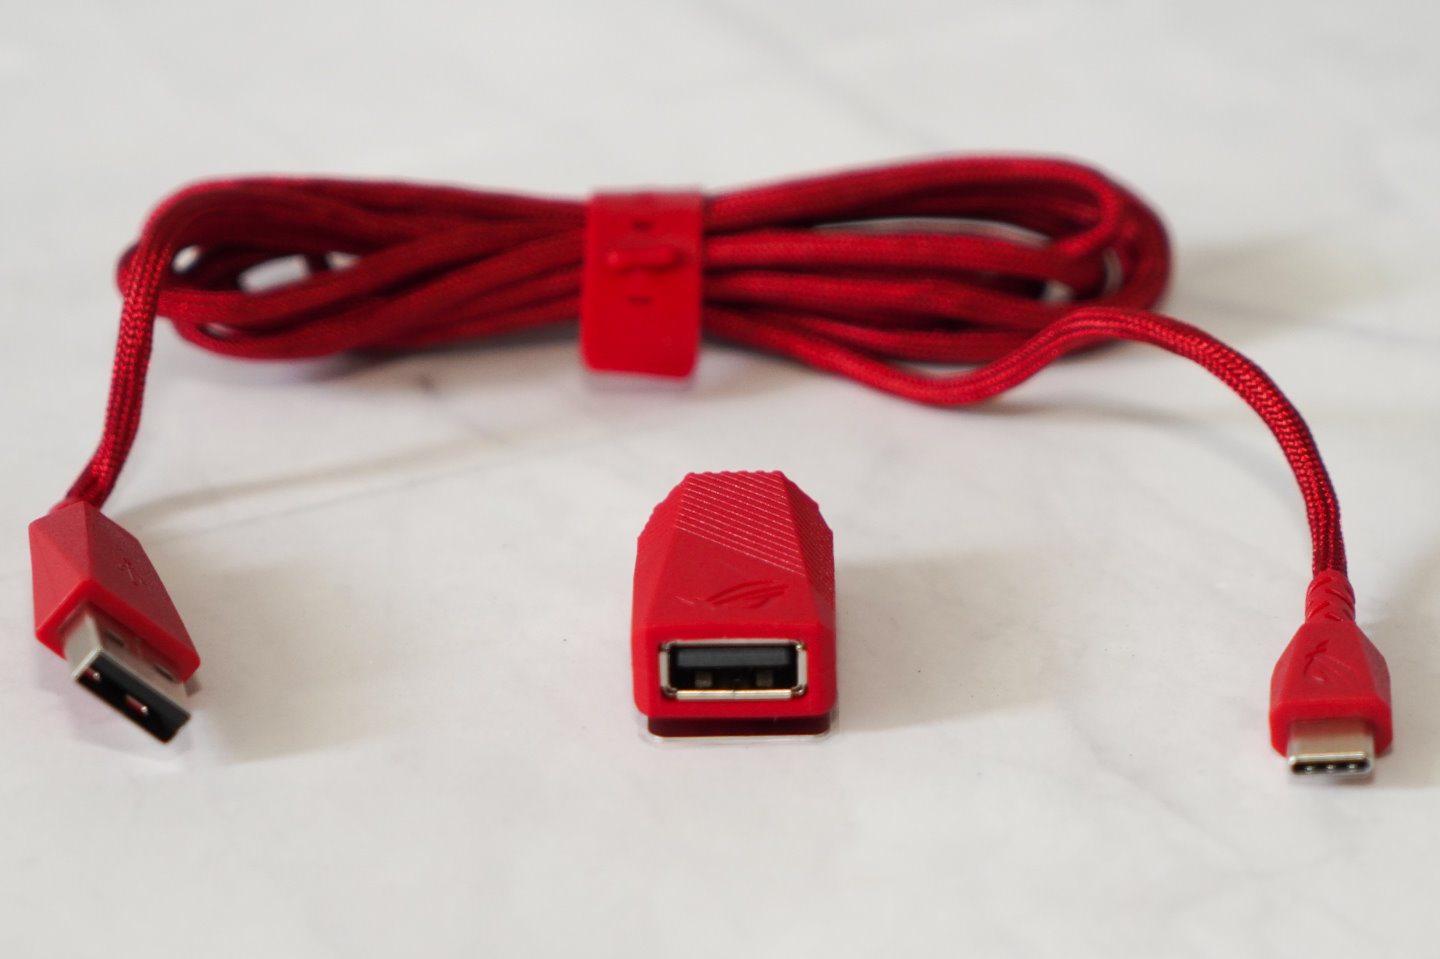 配件的USB纜線採USB Type-A公對Type-C型式，可以直接連接至滑鼠。若裝上轉接，則可變成USB Type-A公對Type-A母型式的延長線使用。